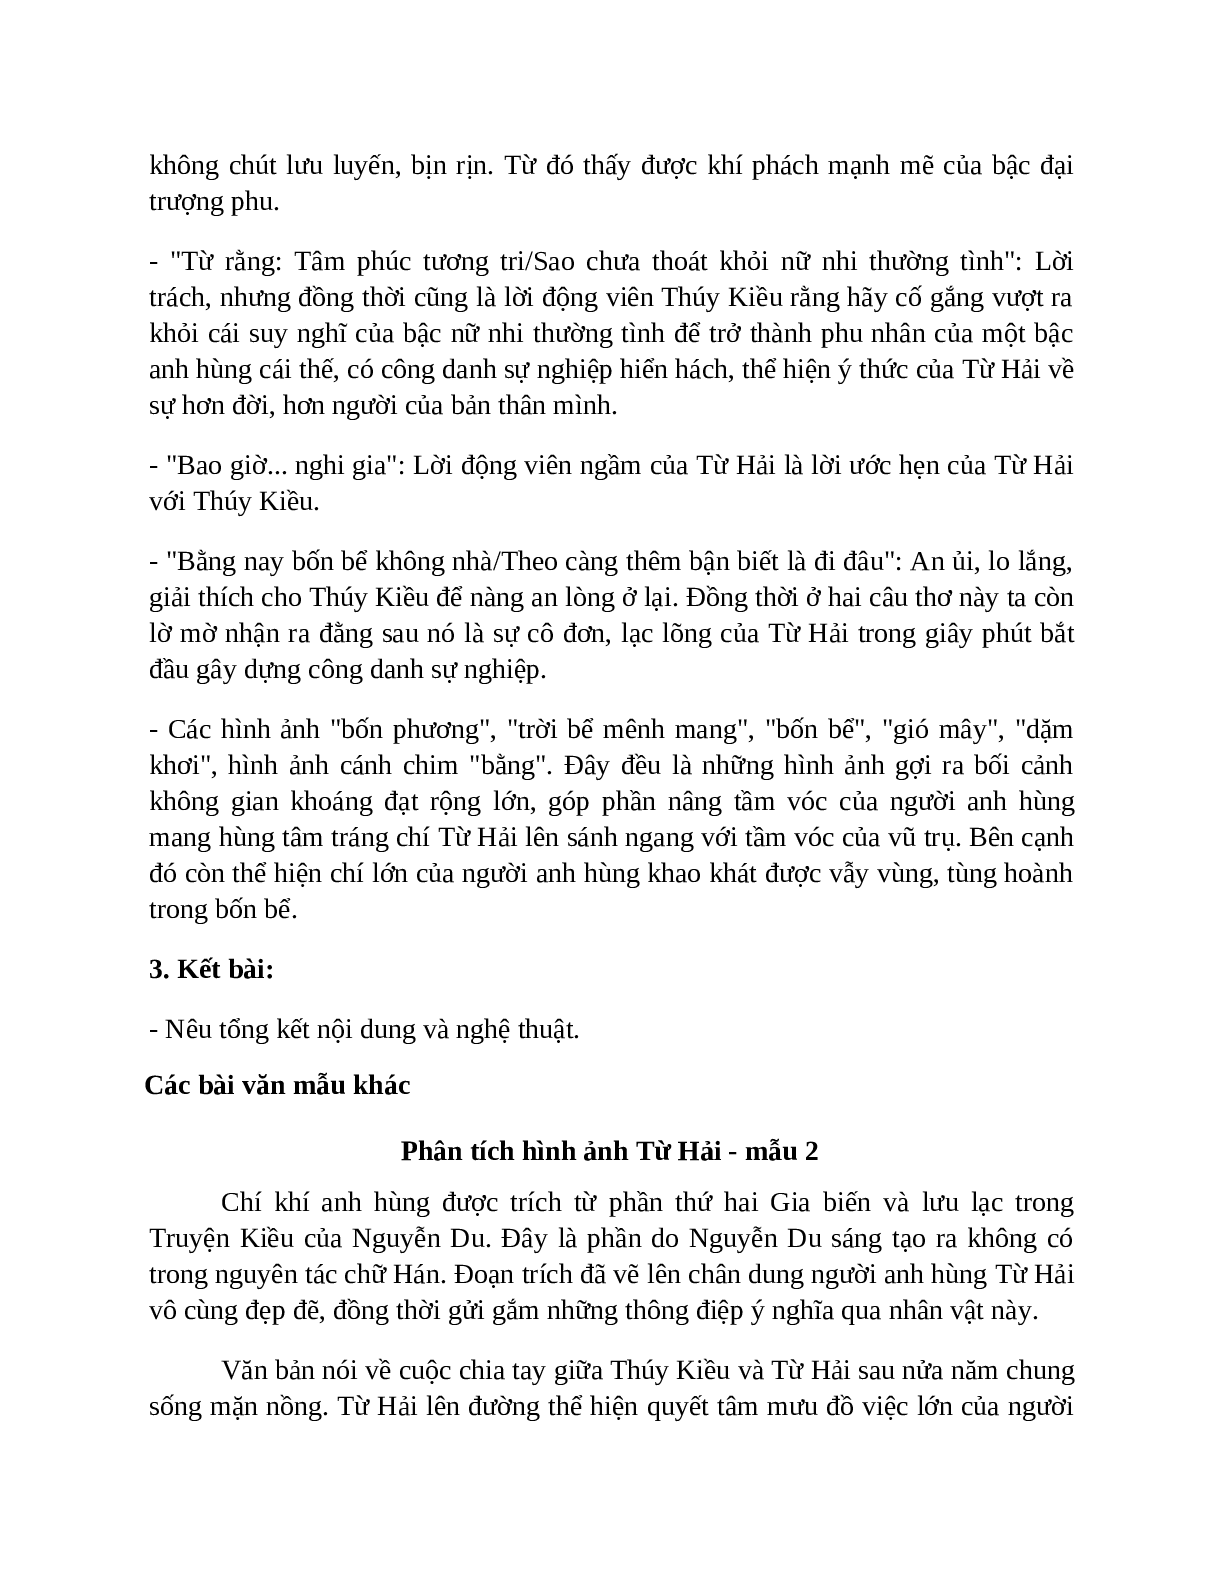 TOP 17 bài Phân tích nhân vật Từ Hải SIÊU HAY (trang 4)